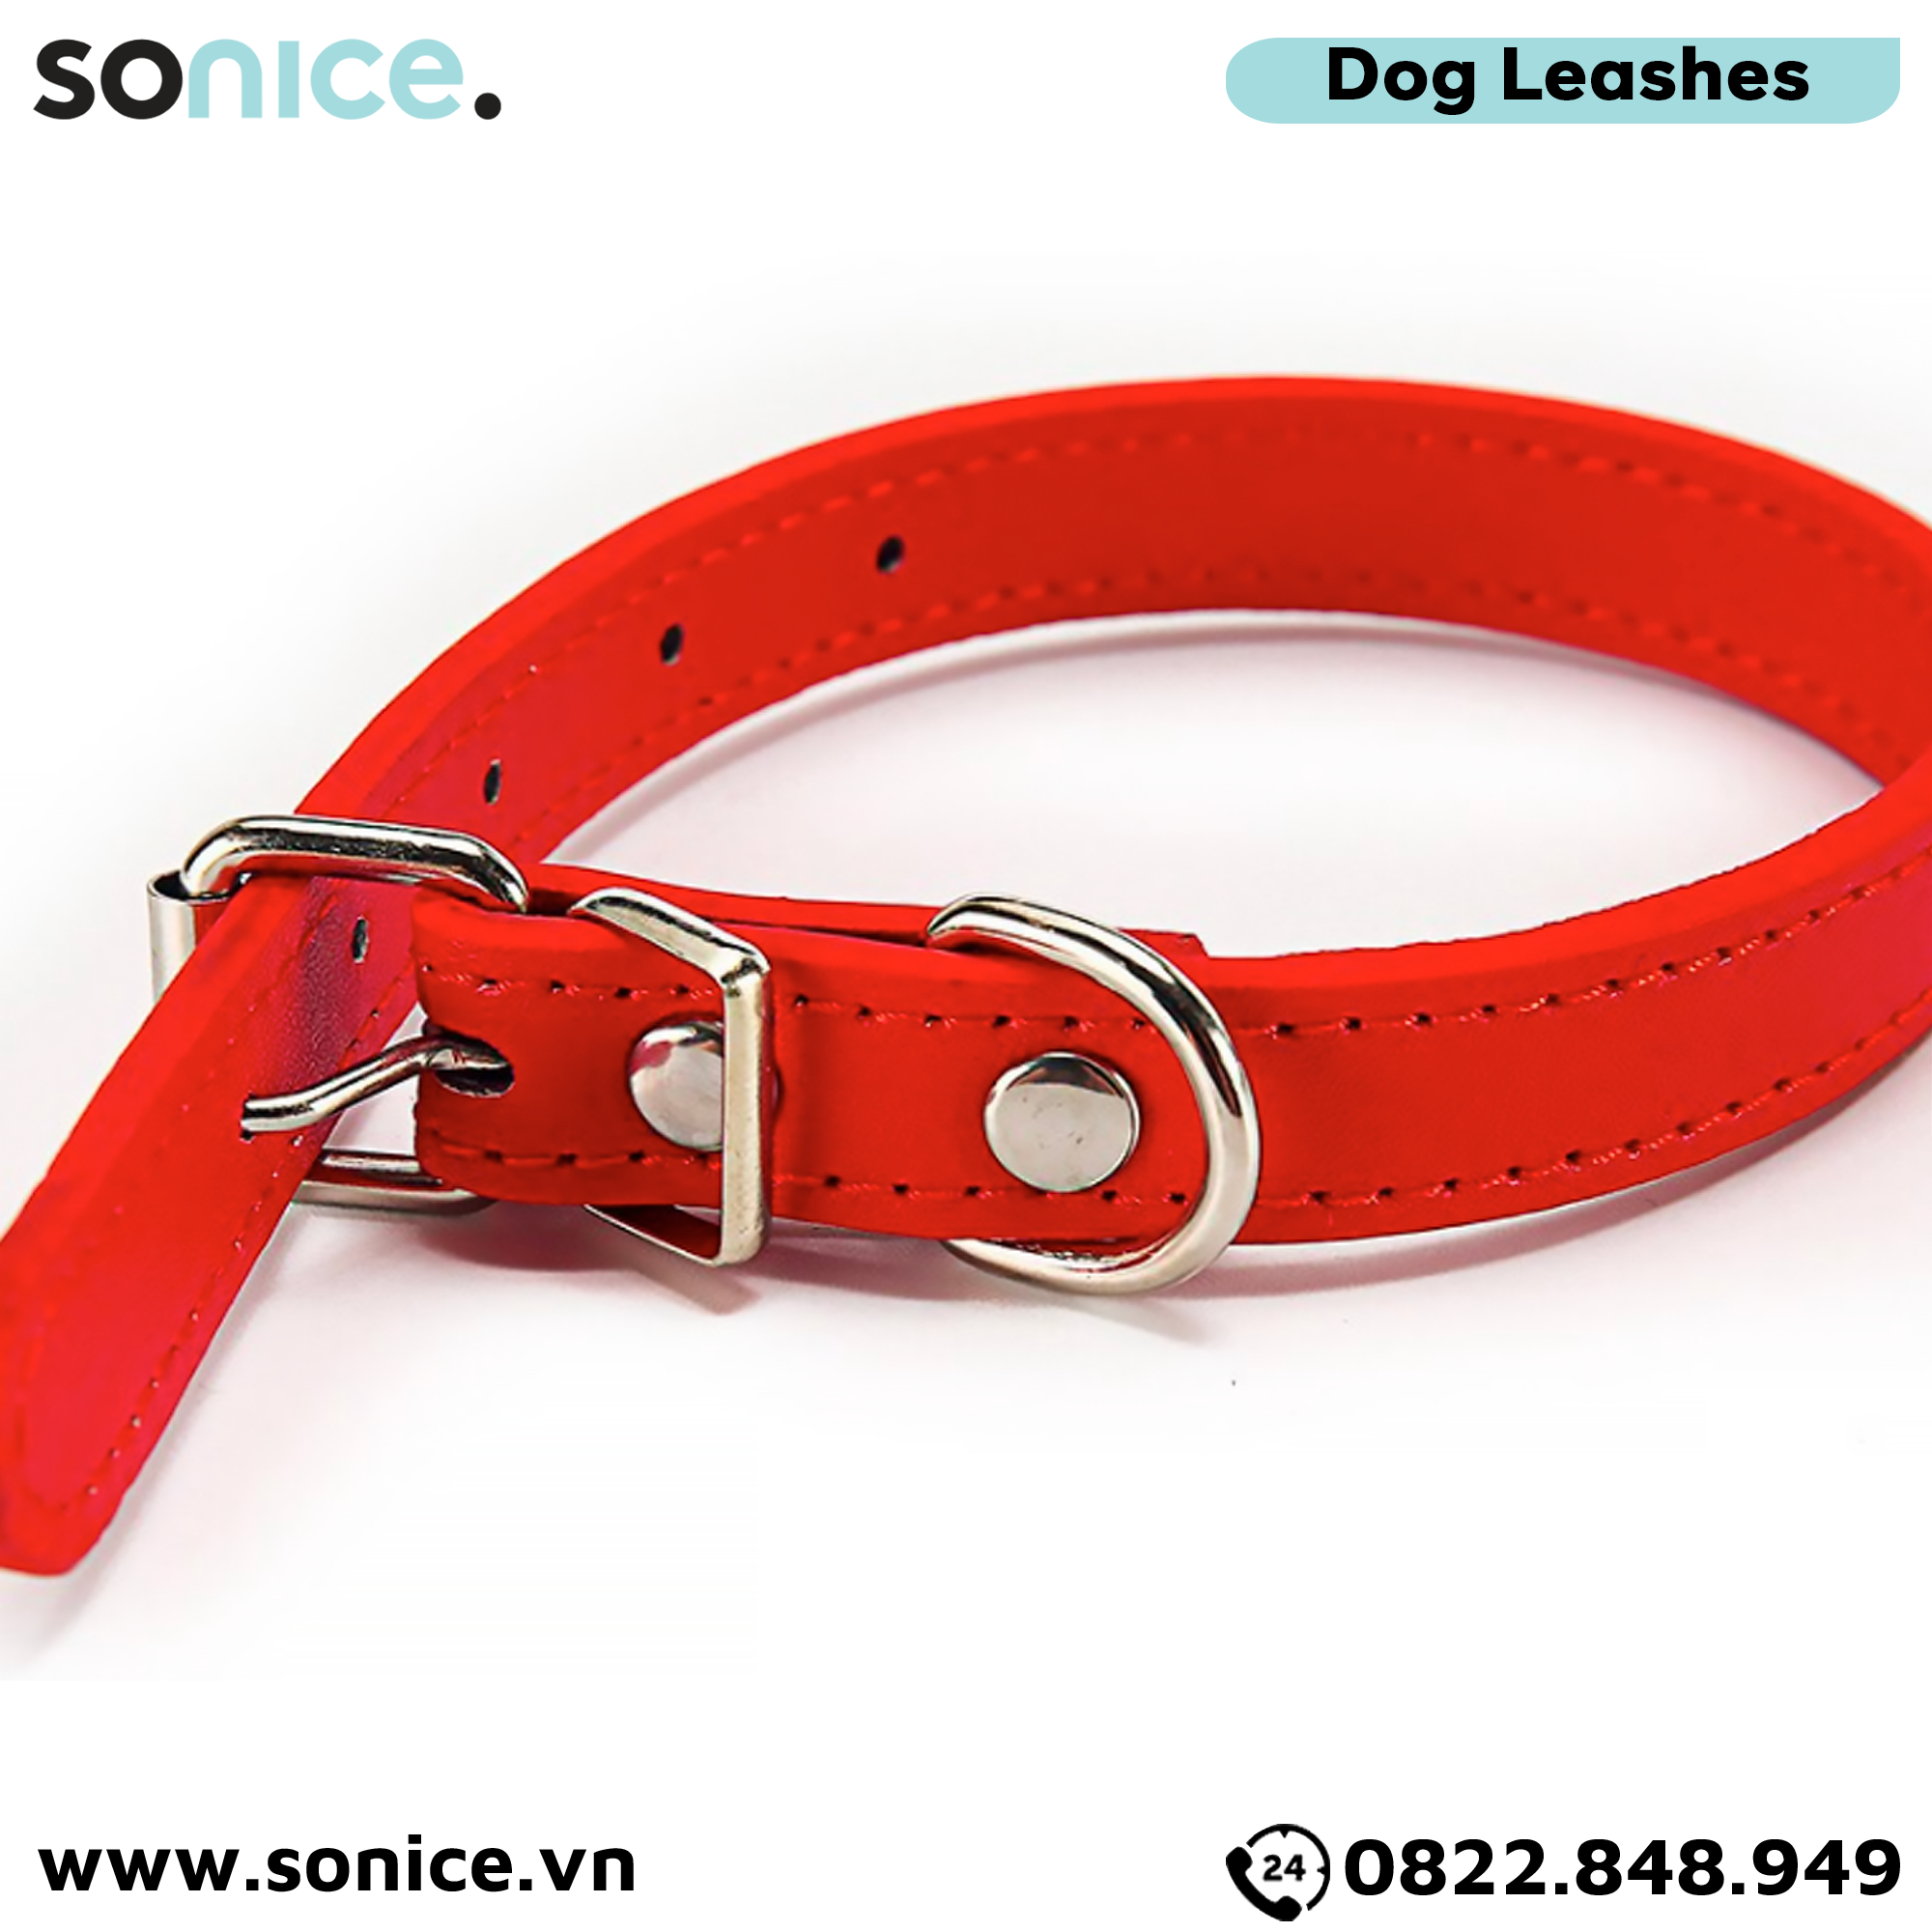  Vòng cổ da Petsmix Leather Collar size 20-35kg SONICE. 